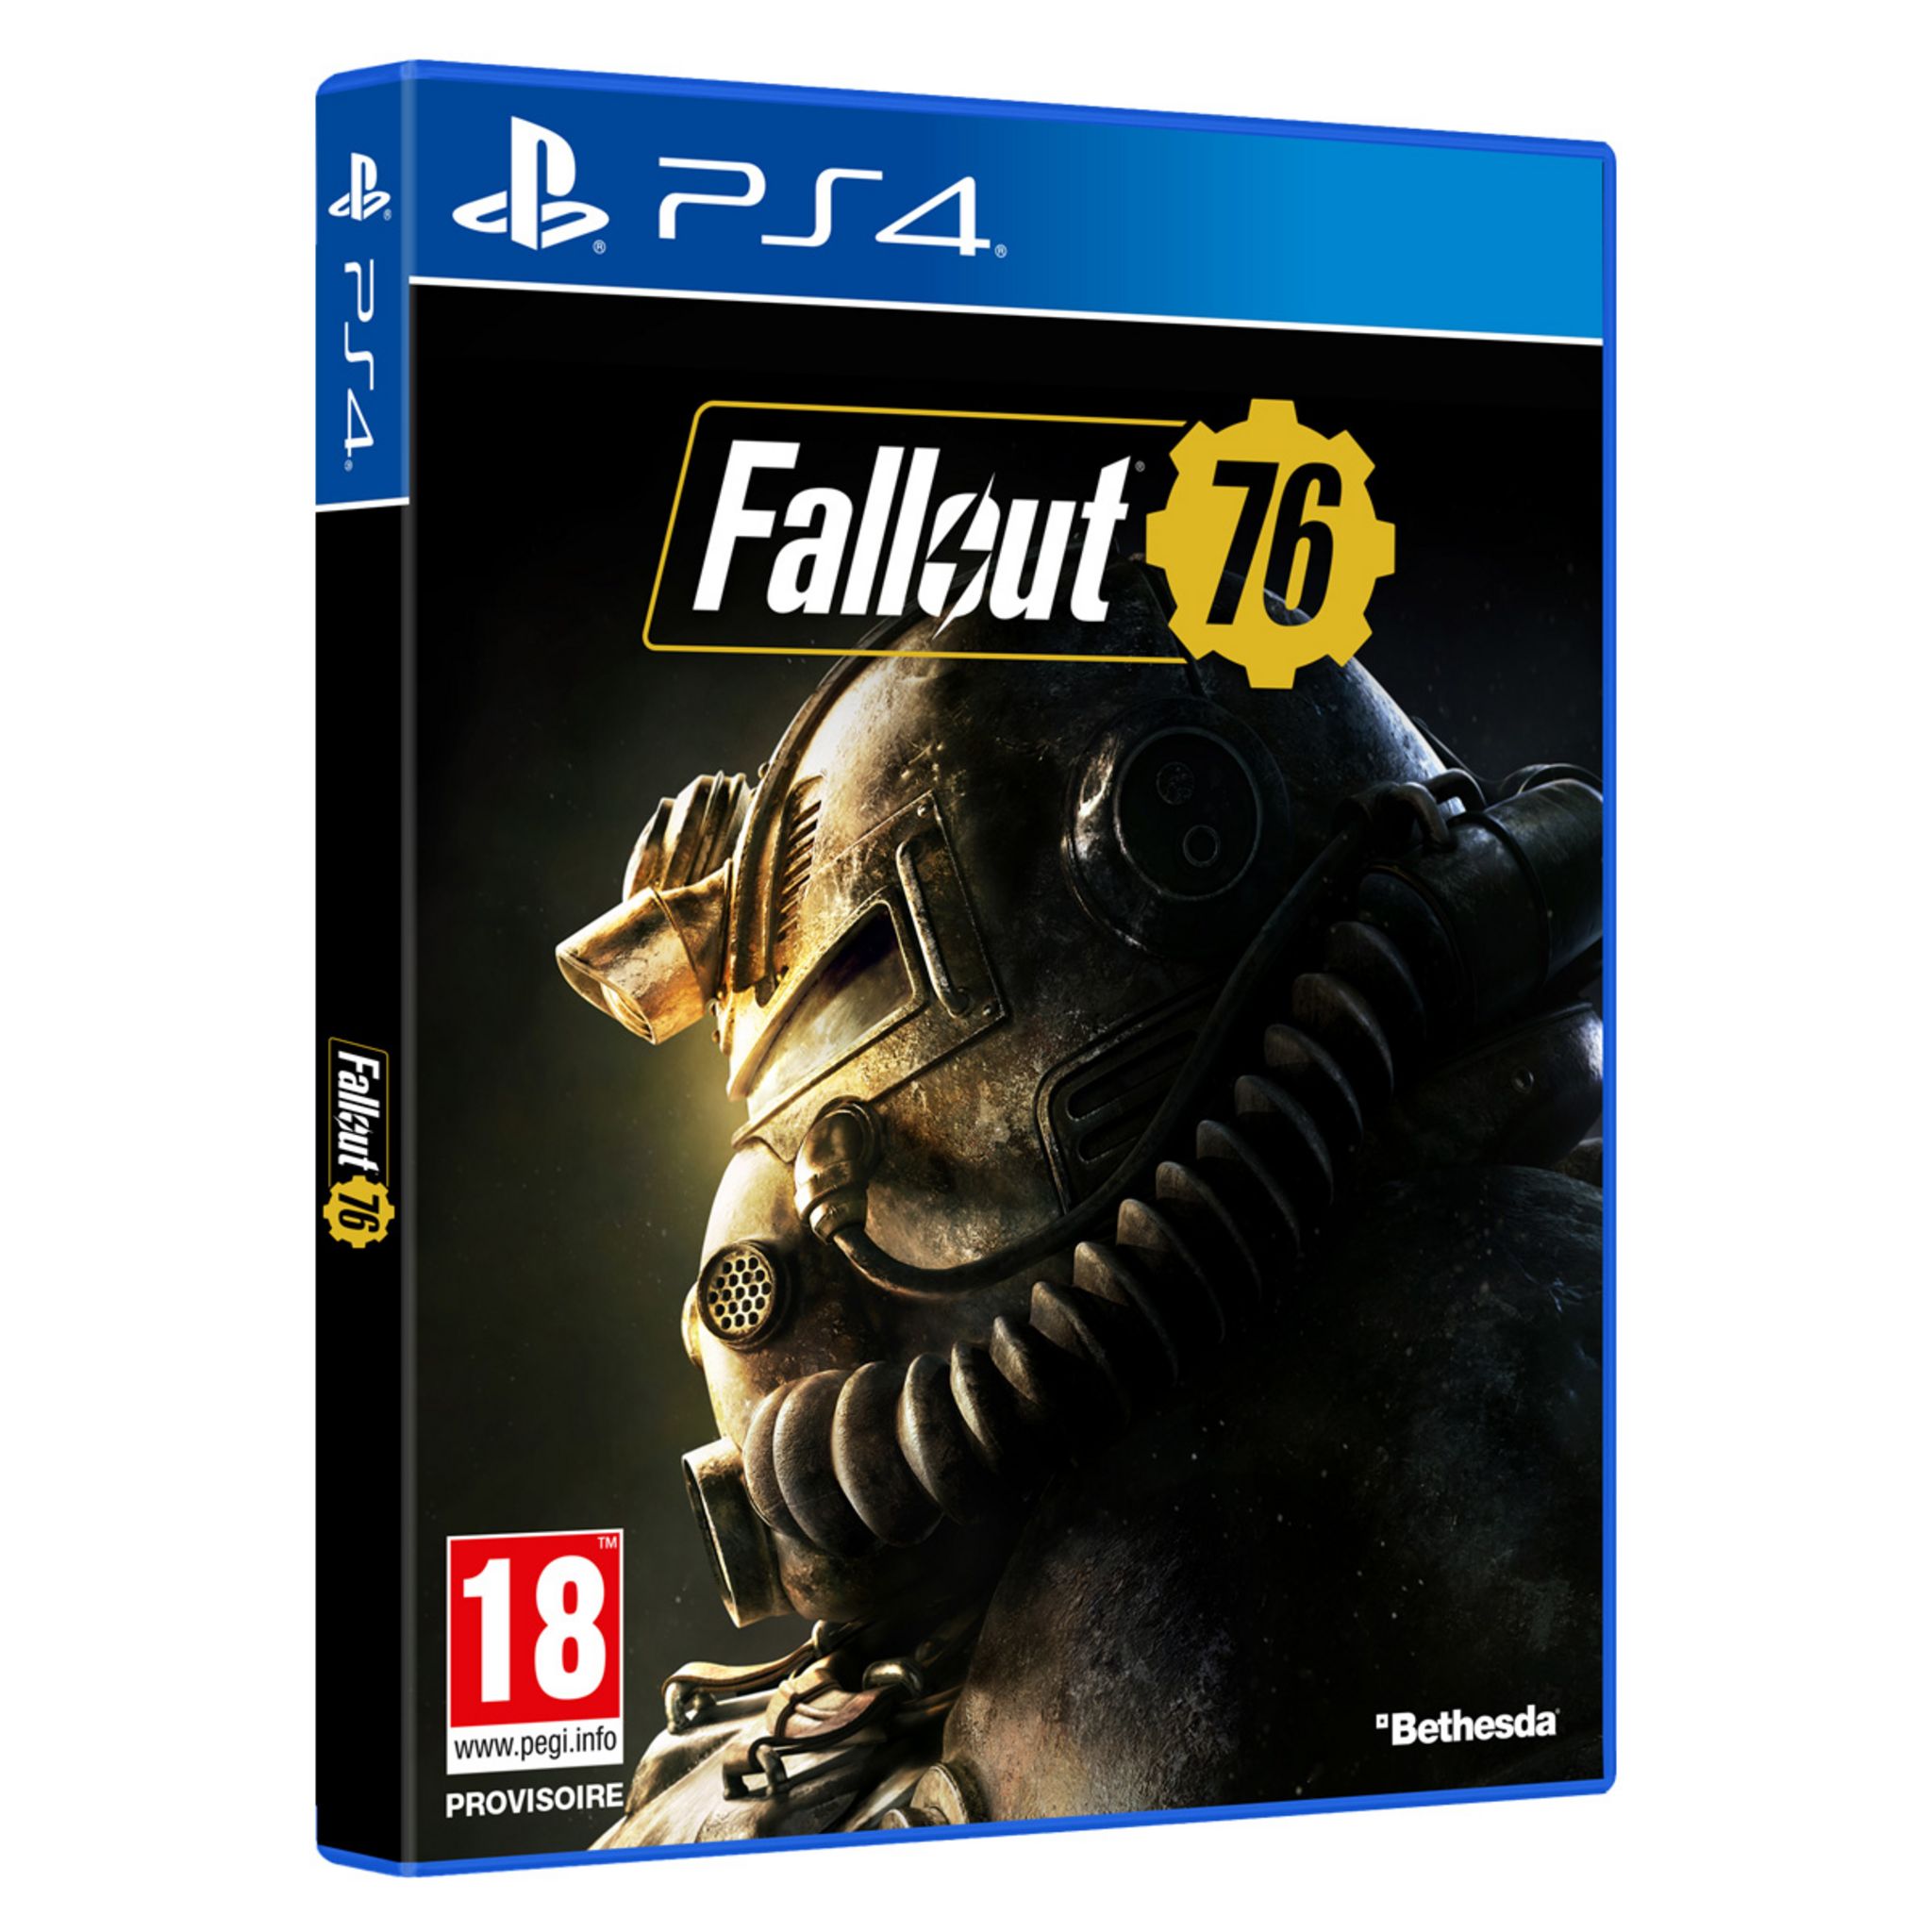 Фоллаут ps4. Игра для ps4 Fallout 76. Фоллаут 76 ps4. Fallout 76 диск ps4. Fallout 76 на ПС.